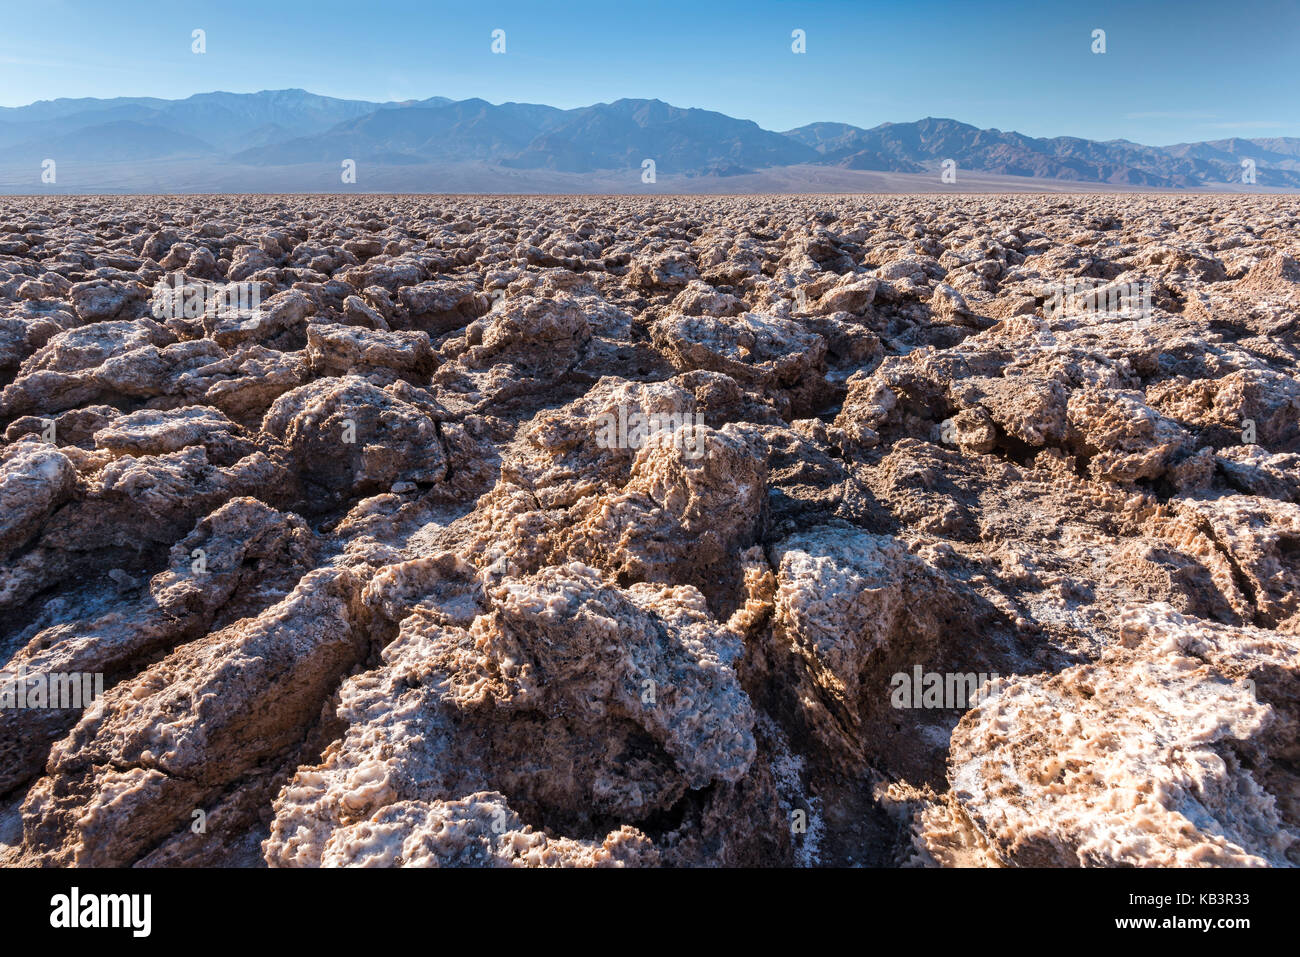 Piscine sel, badwater dans la vallée de la mort, Californie, USA Banque D'Images